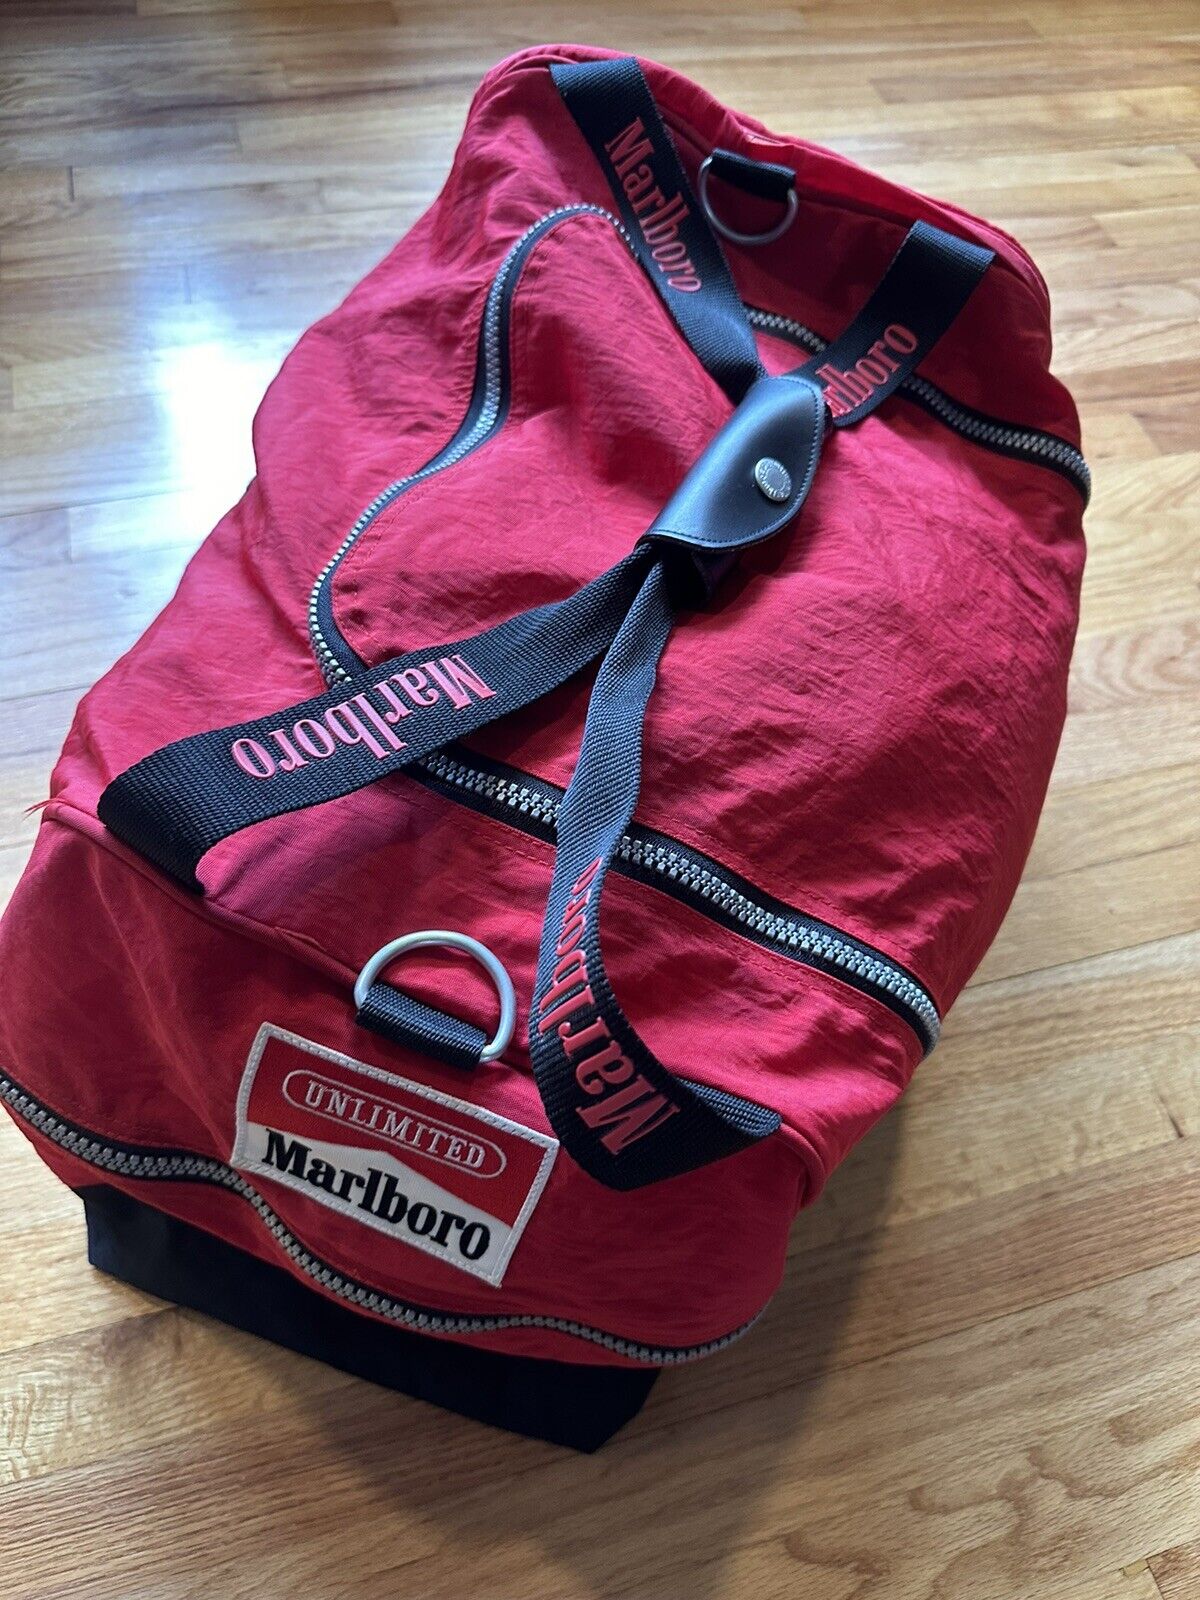 VTG 90’s Marlboro Unlimited Gym Sports Duffle Bag Medium Size Dims 14x12x9 NWT